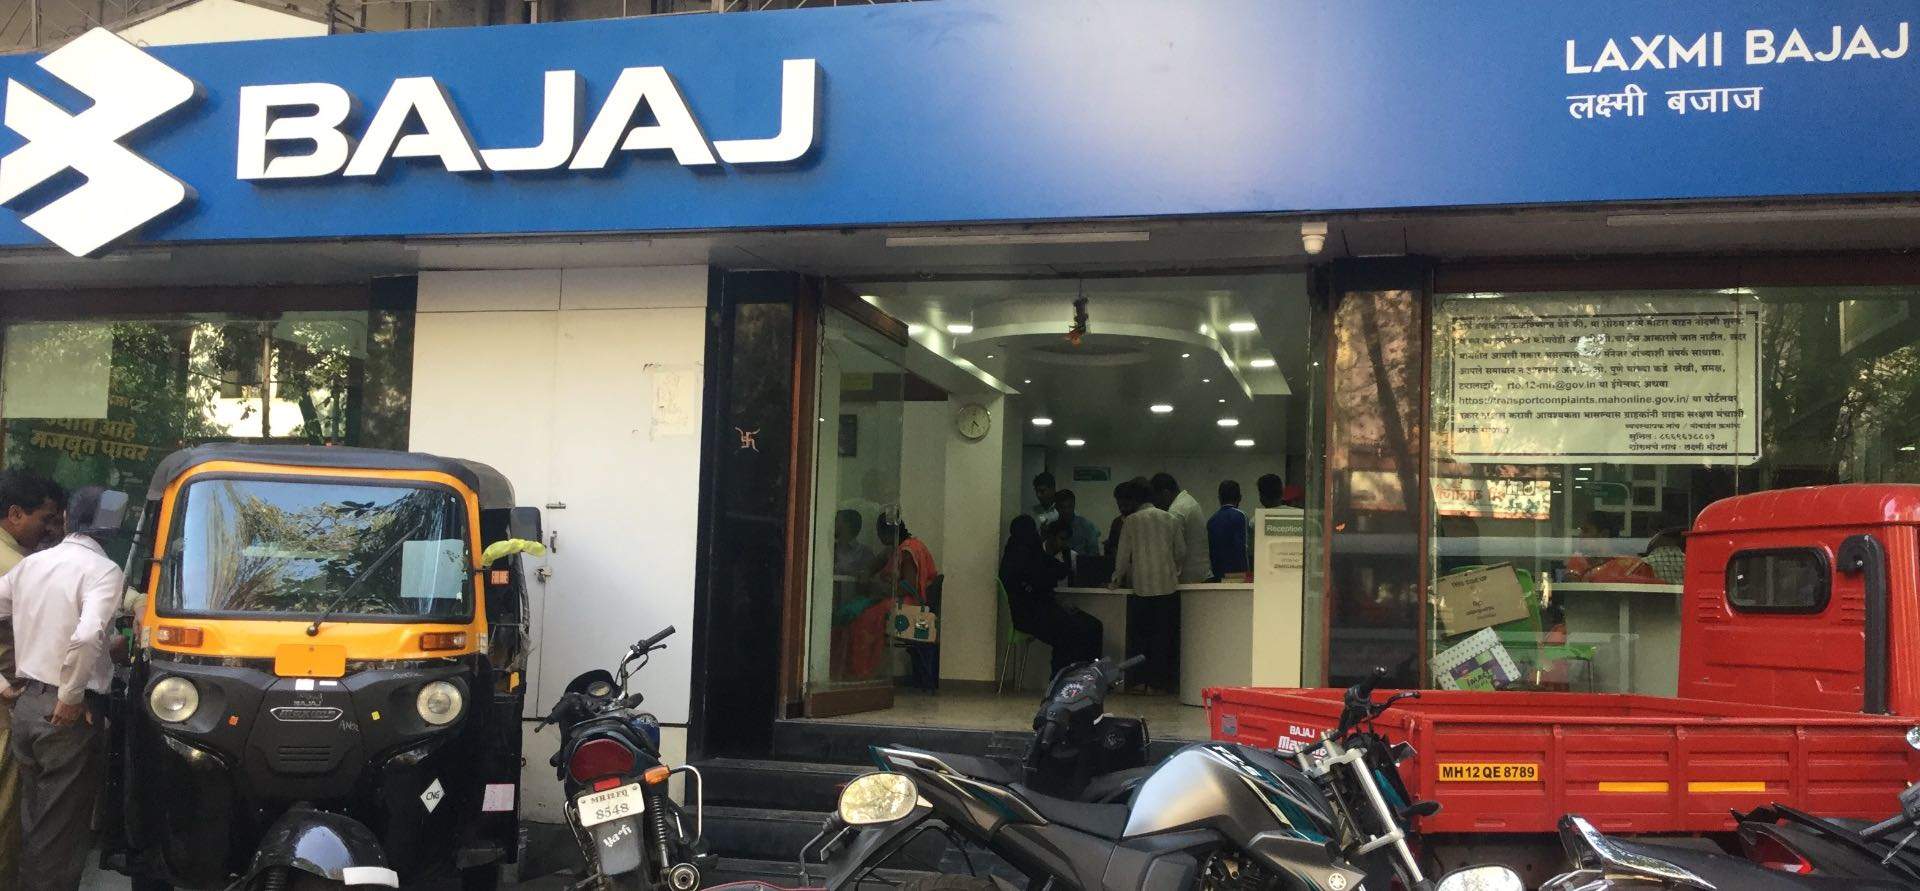 Bajaj Auto total sales down 20% in September